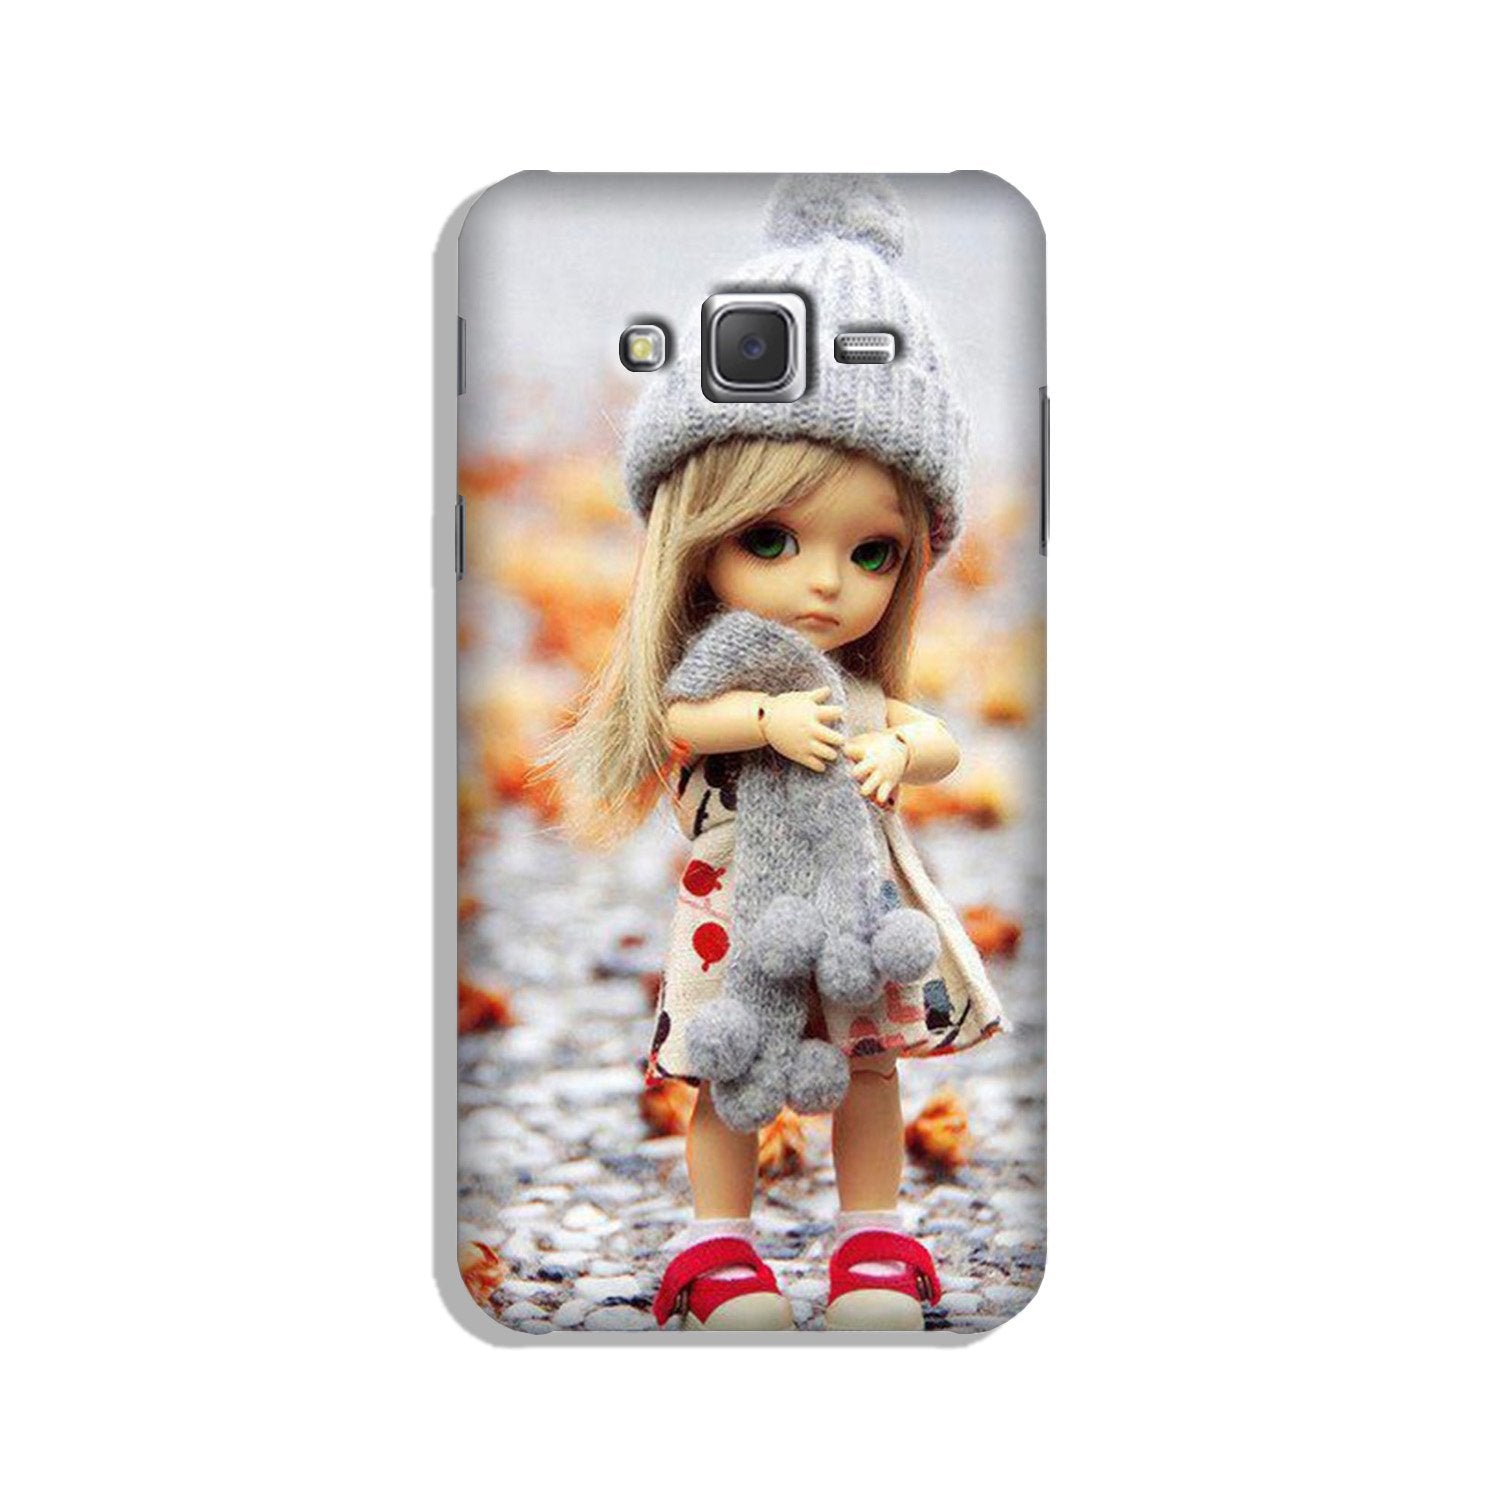 Cute Doll Case for Galaxy J2 (2015)